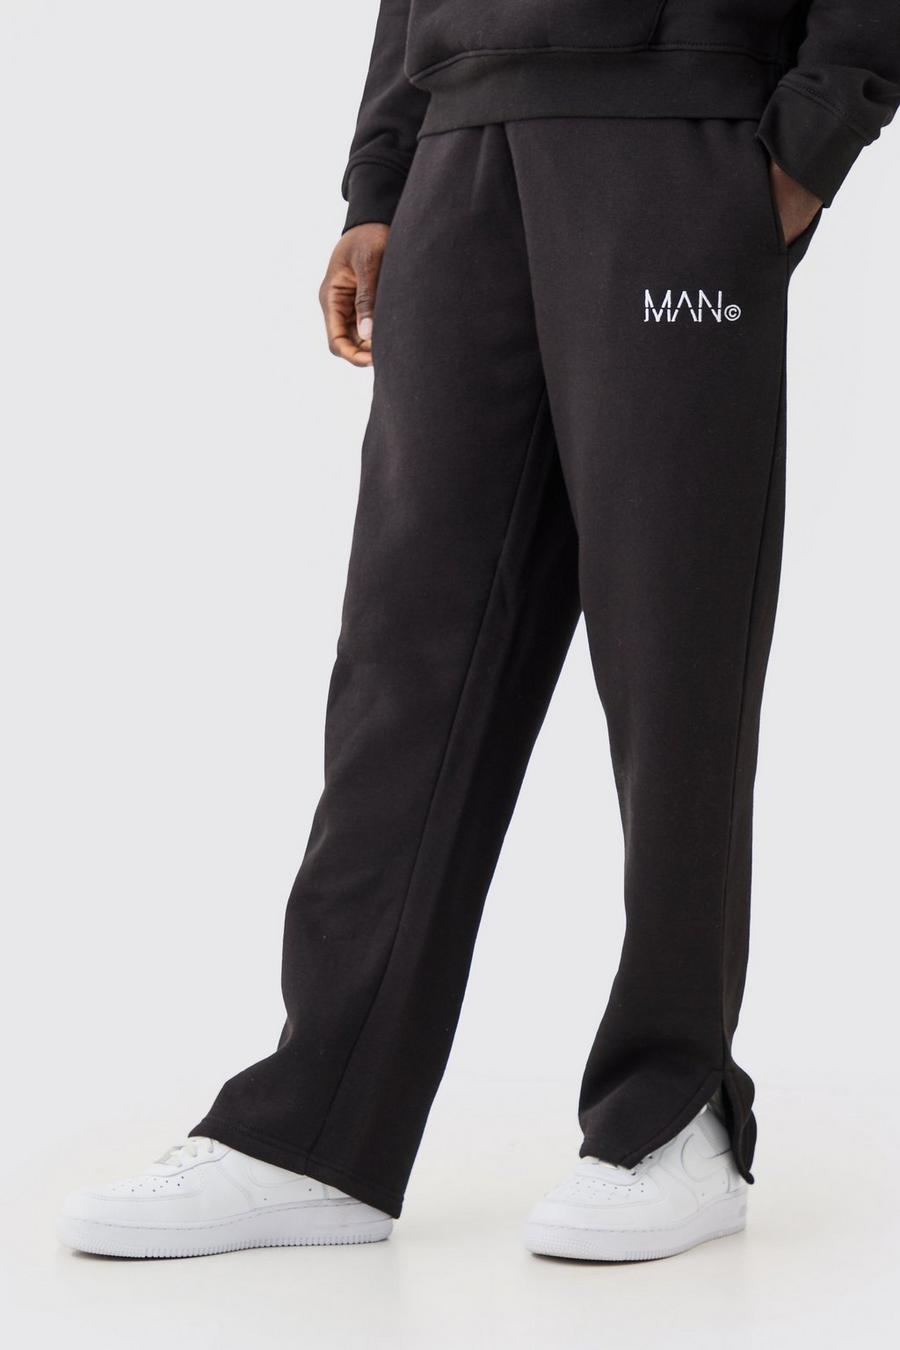 Pantalón deportivo MAN con abertura en el bajo, Black